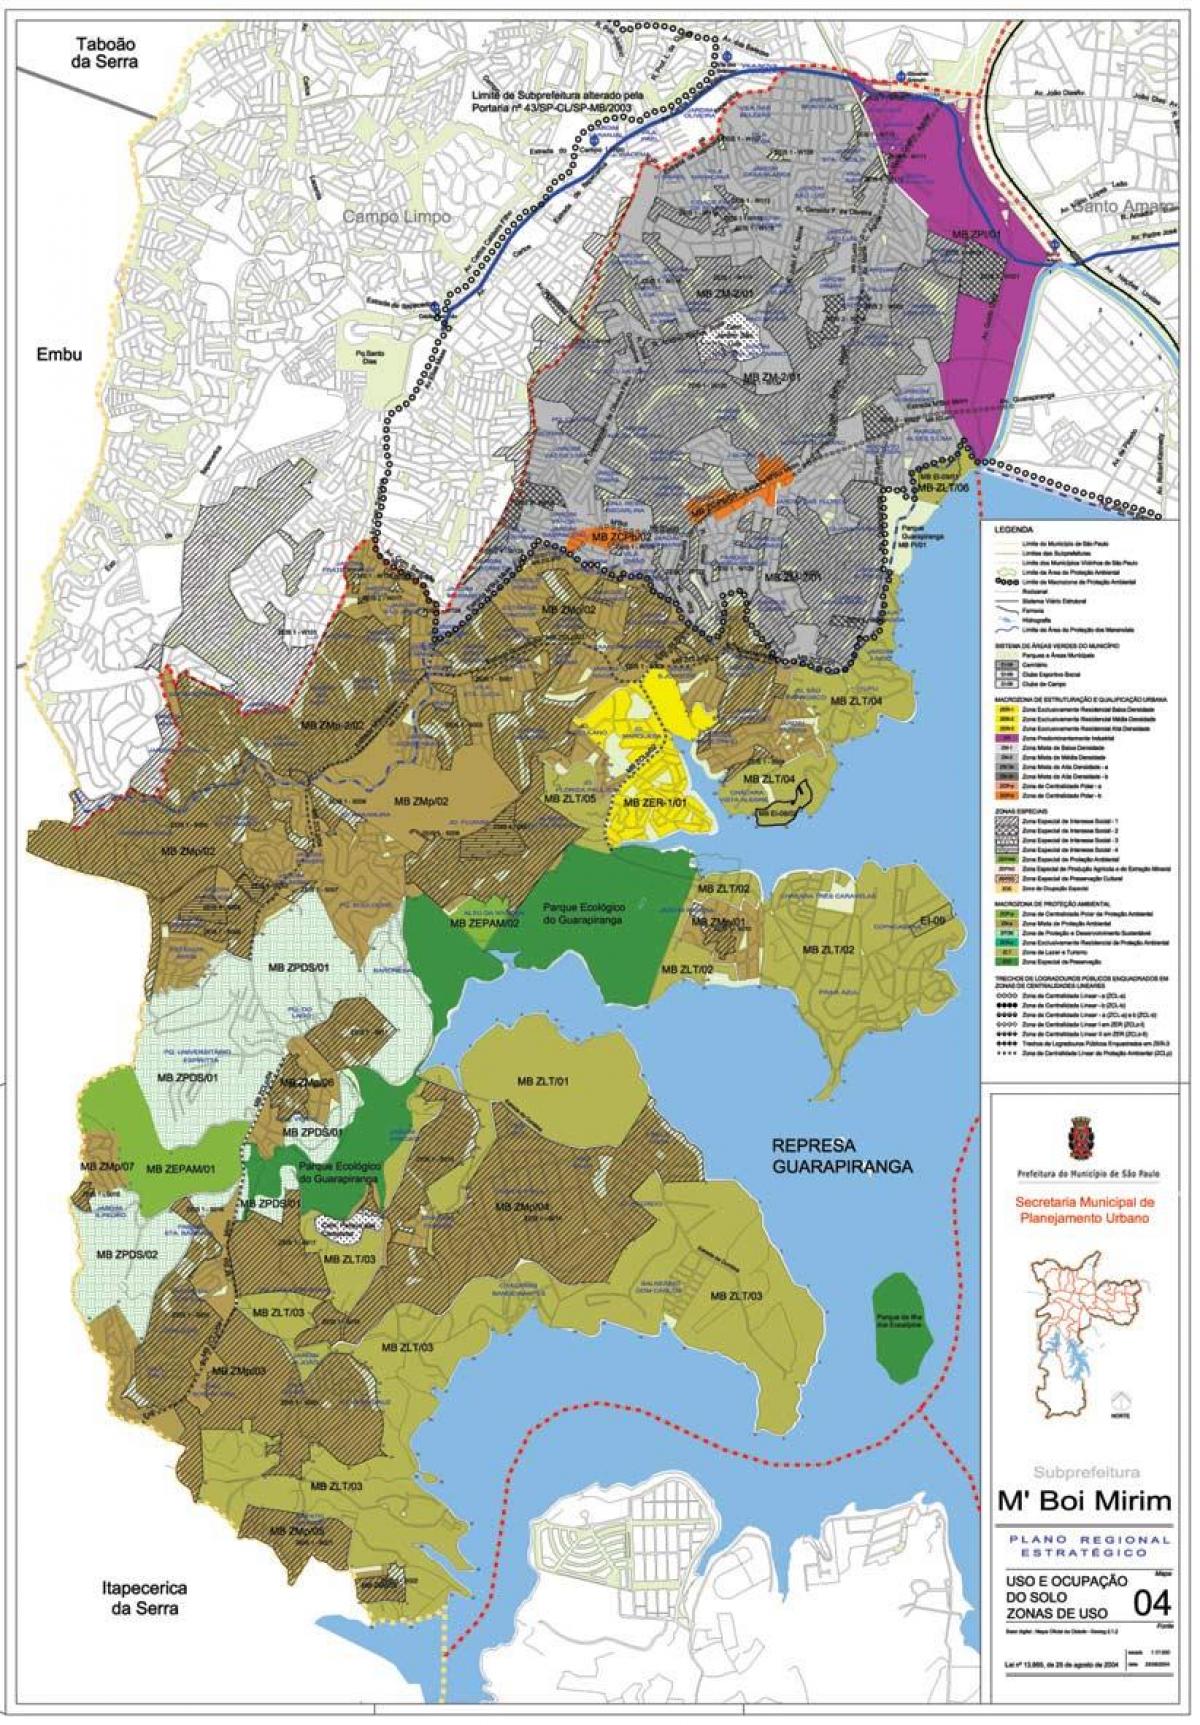 Χάρτης της μ'βω Μιριμ Σάο Πάολο - Κατάληψη του εδάφους